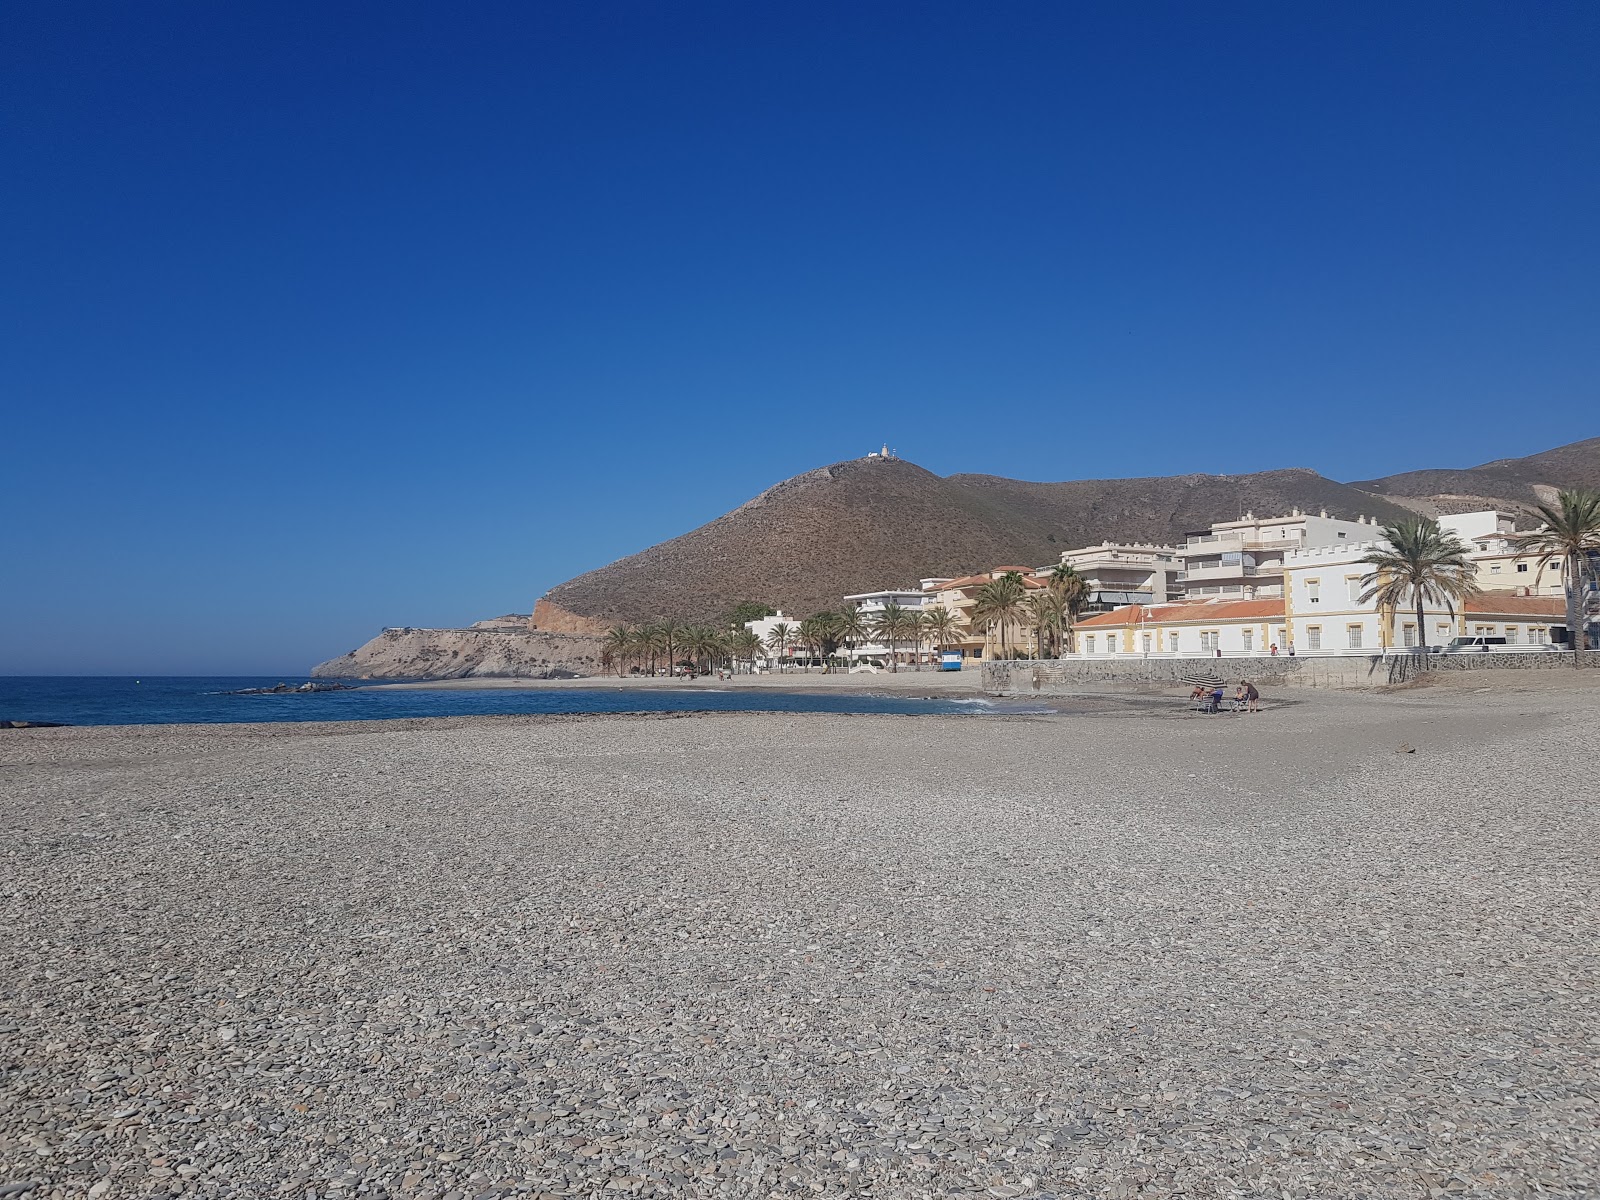 Playa Castell del Ferro'in fotoğrafı gri ince çakıl taş yüzey ile